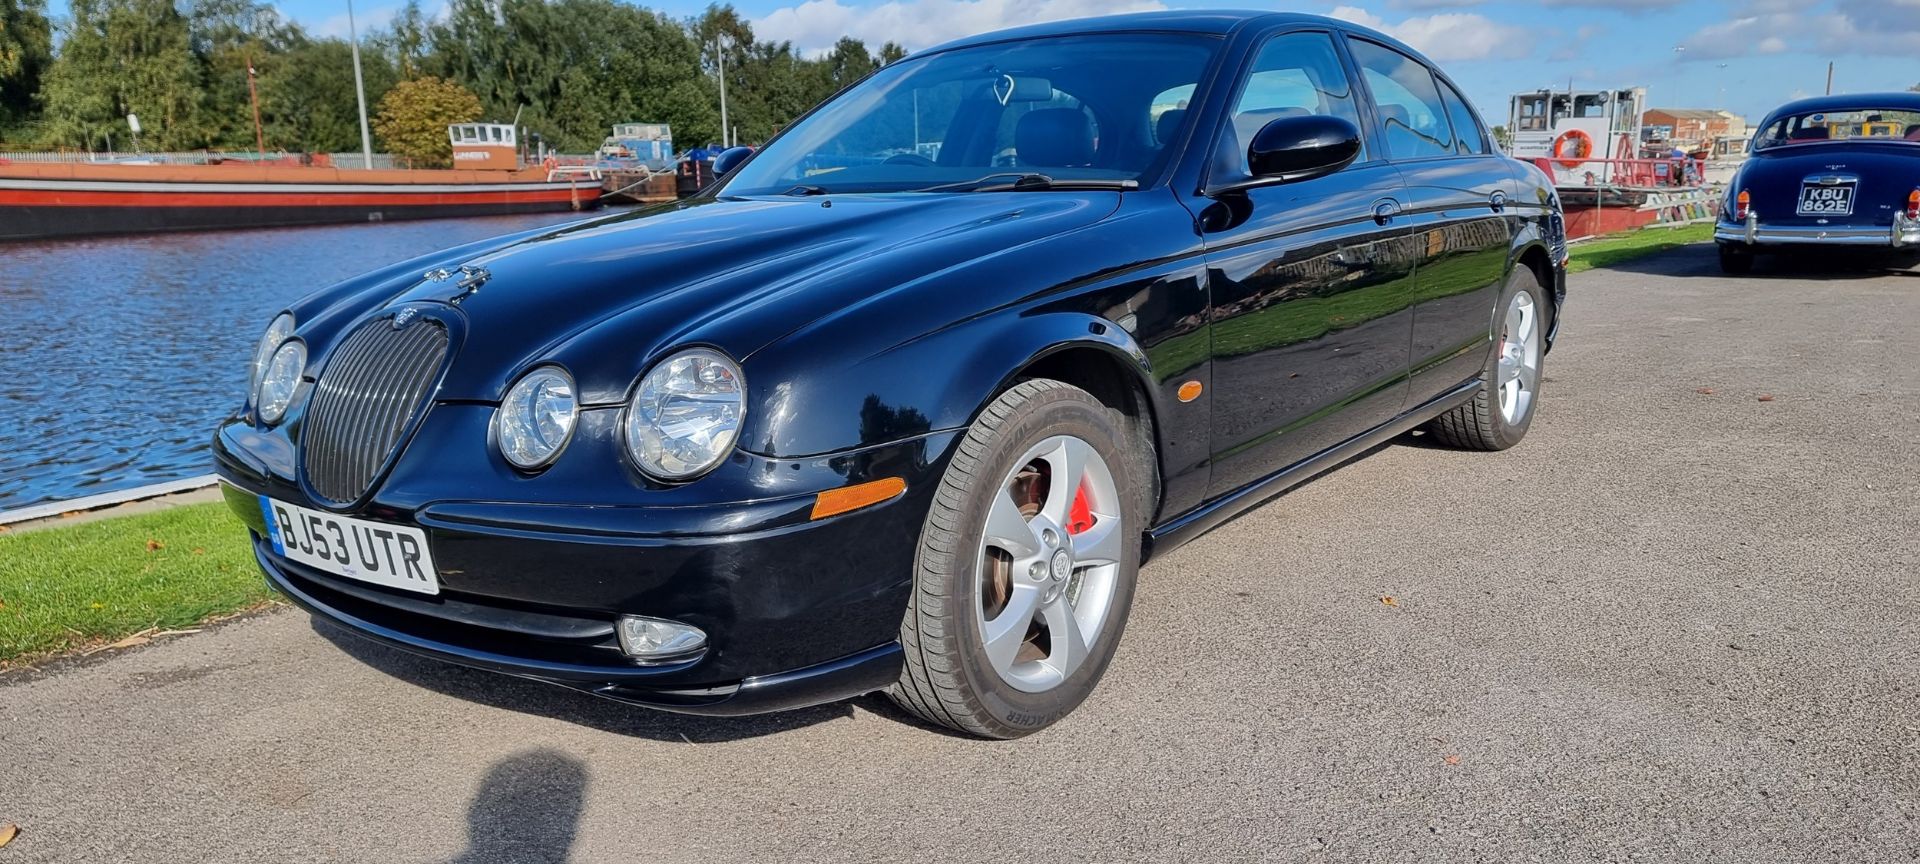 2003 Jaguar S Type, 2.5 V6 Sport. Registration number BJ53 UTR. VIN number SAJAC03N94JN03059. The - Image 2 of 16